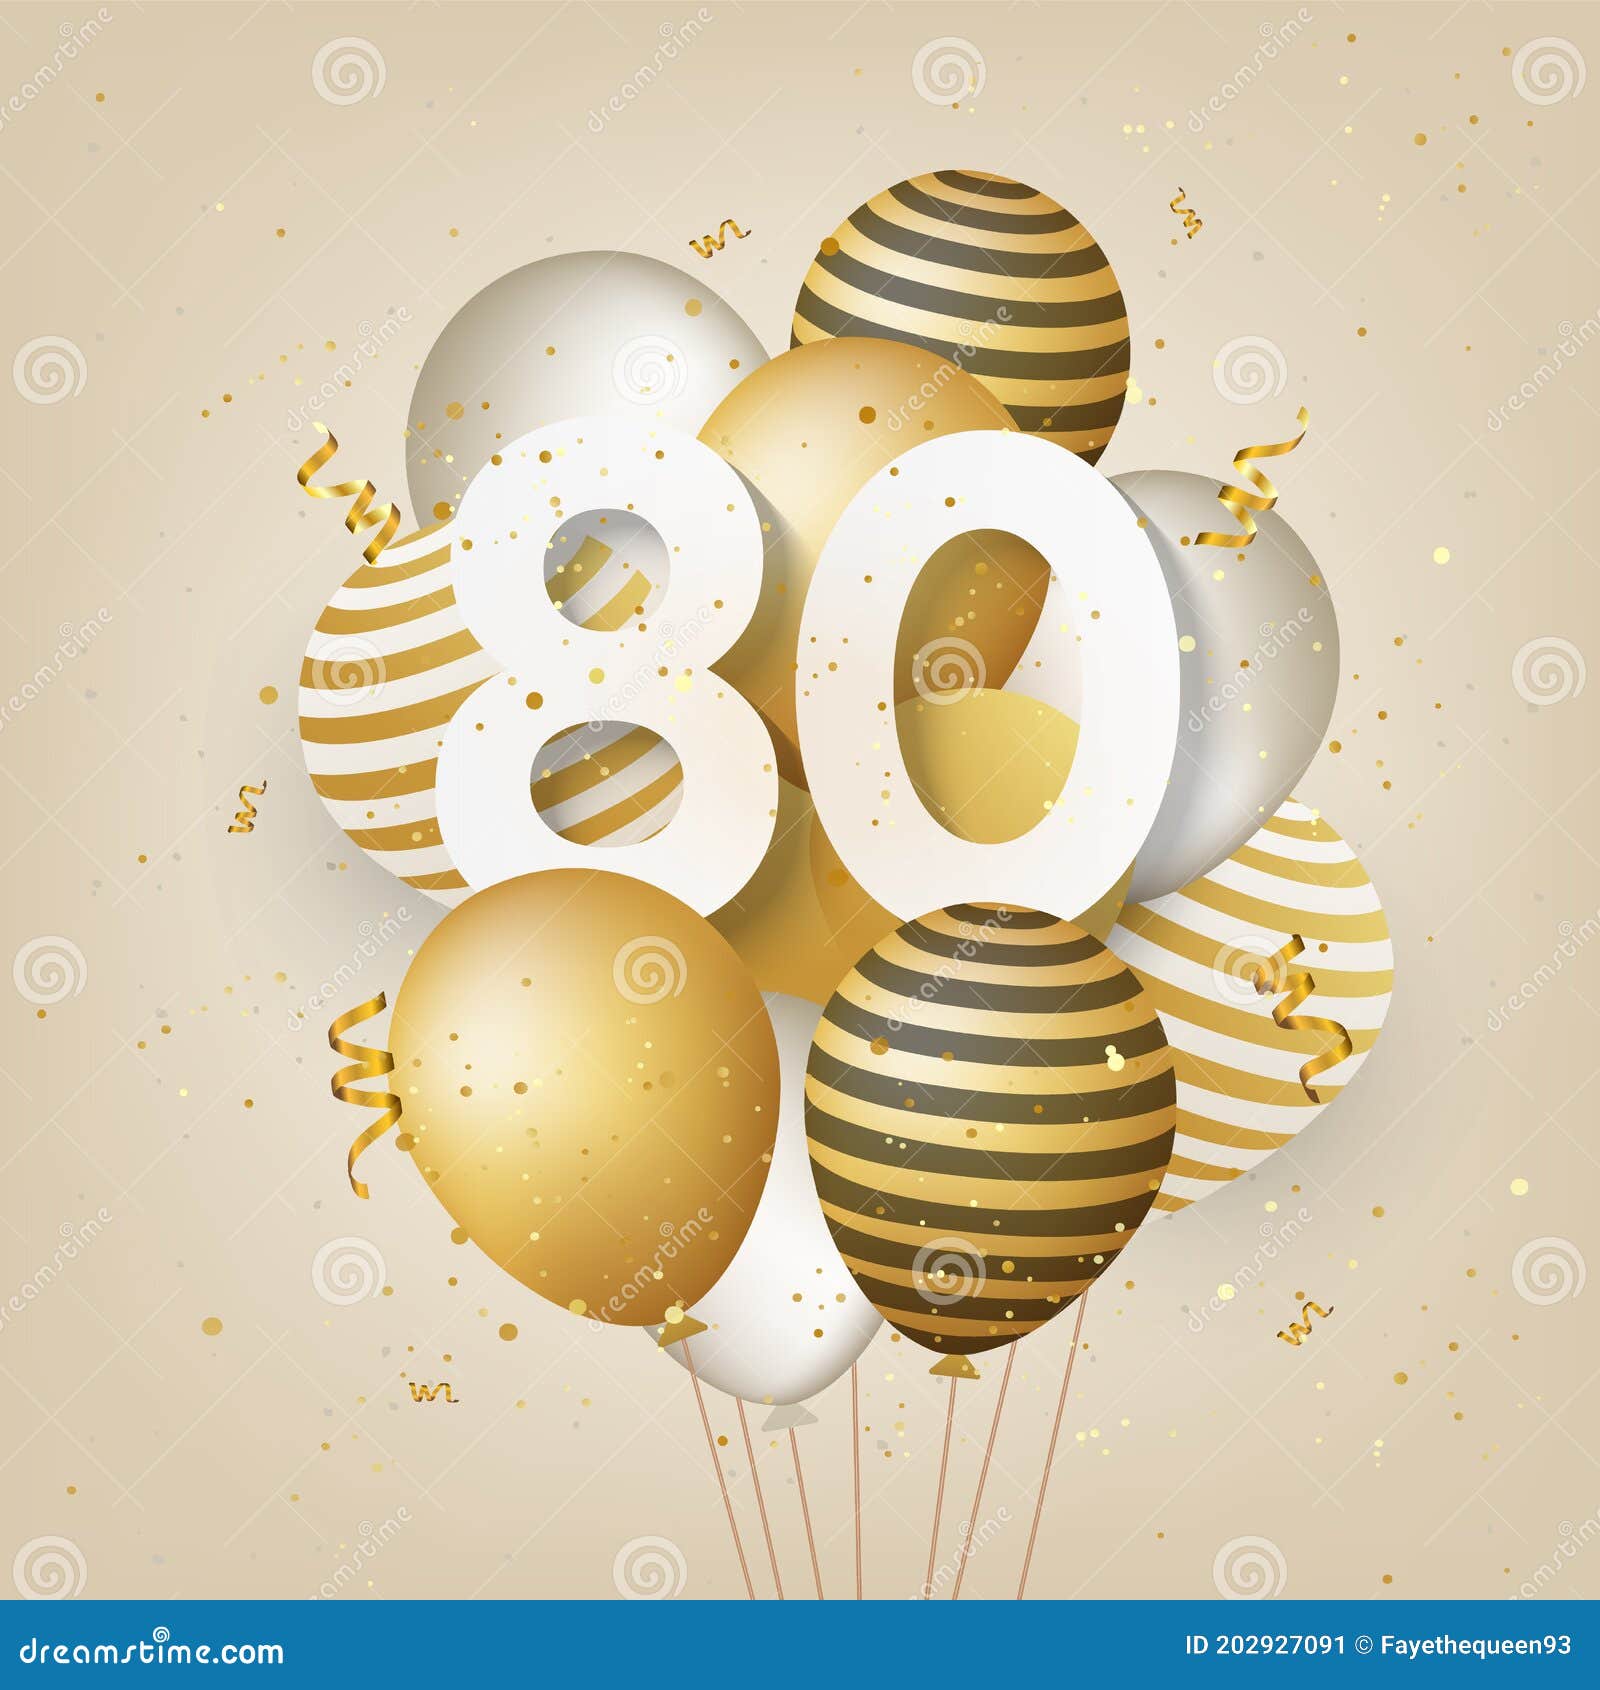 Bạn muốn gửi tặng một lời chúc mừng sinh nhật đặc biệt khi một người thân của bạn tròn 80 tuổi? Hãy sử dụng thẻ chúc mừng sinh nhật lần thứ 80 với khí cầu màu vàng rực rỡ như một lời chúc đầy ý nghĩa. Họ sẽ cảm thấy hạnh phúc và biết rằng bạn đang suy nghĩ và quan tâm đến họ.